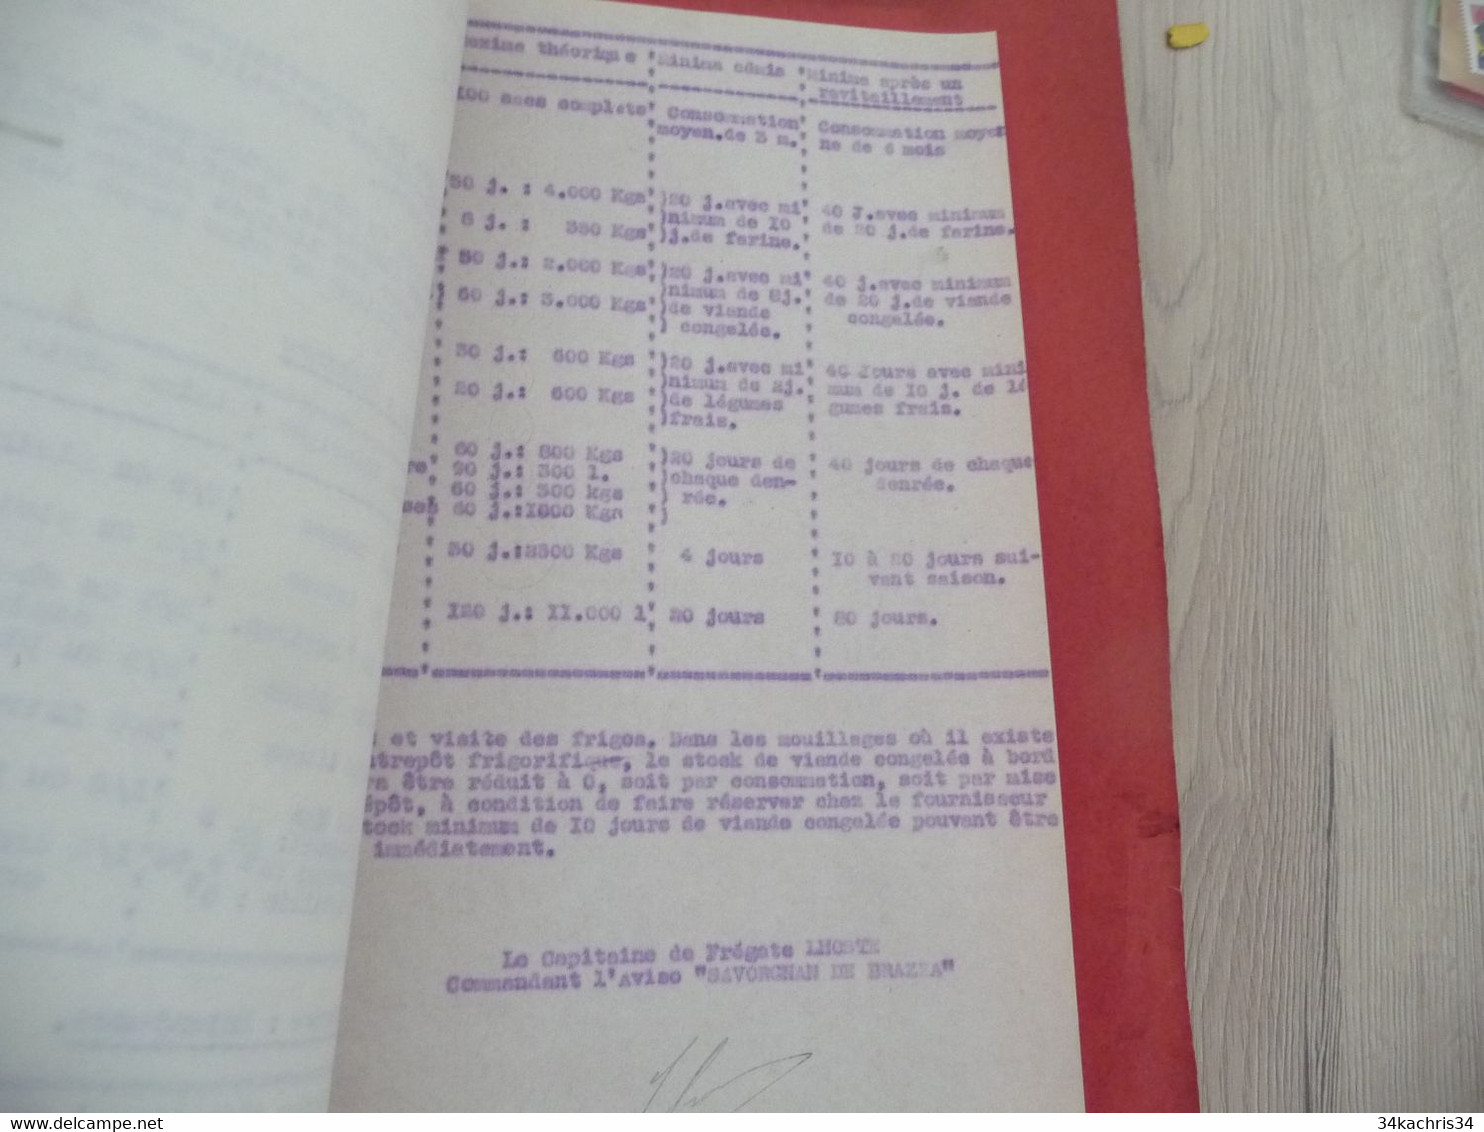 Marine Militaire Combat archive De Rogier commandant torpilleur d'Escadre Buino registre préparation combat ordres cours